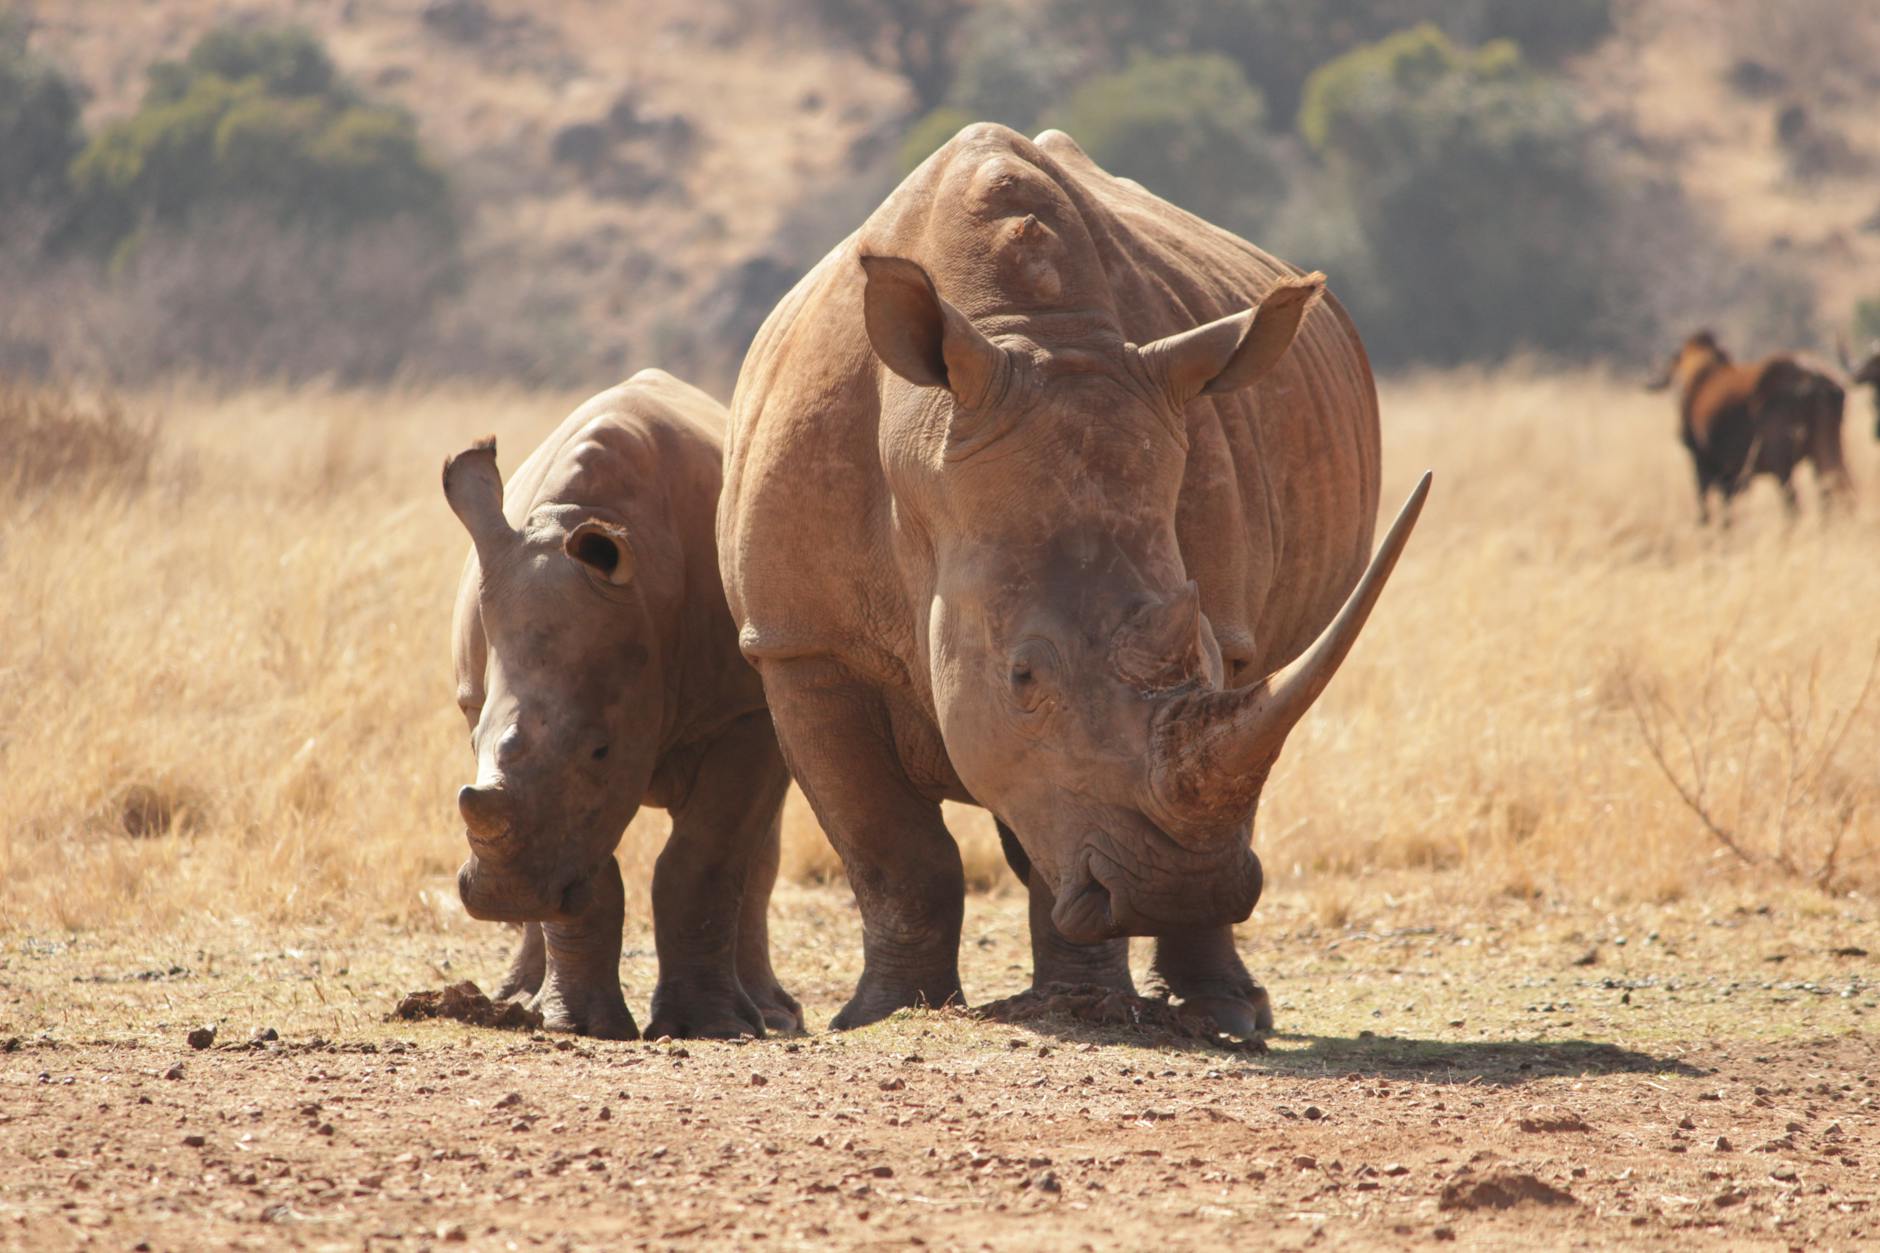 deux rhinocéros marchant sur une friche industrielle